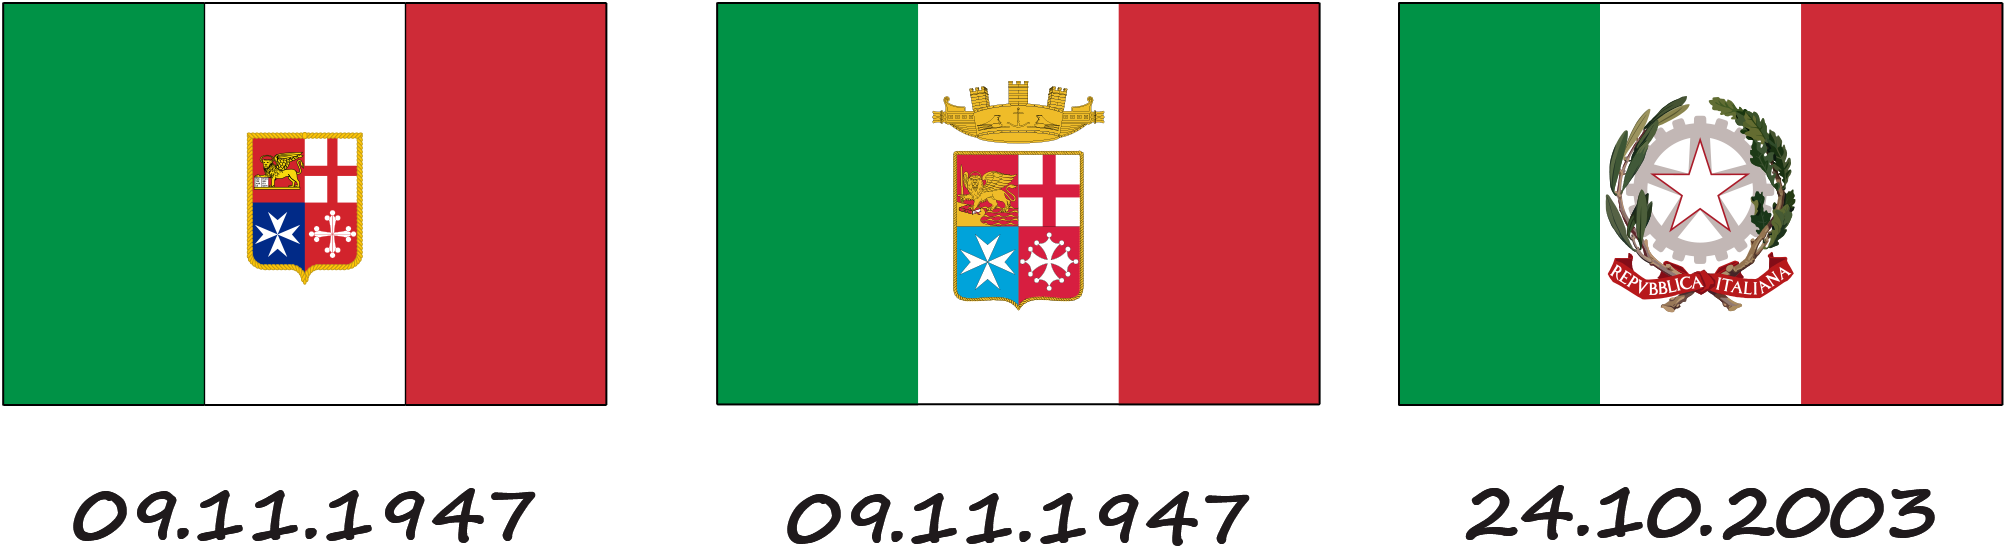 Todas las banderas de Italia